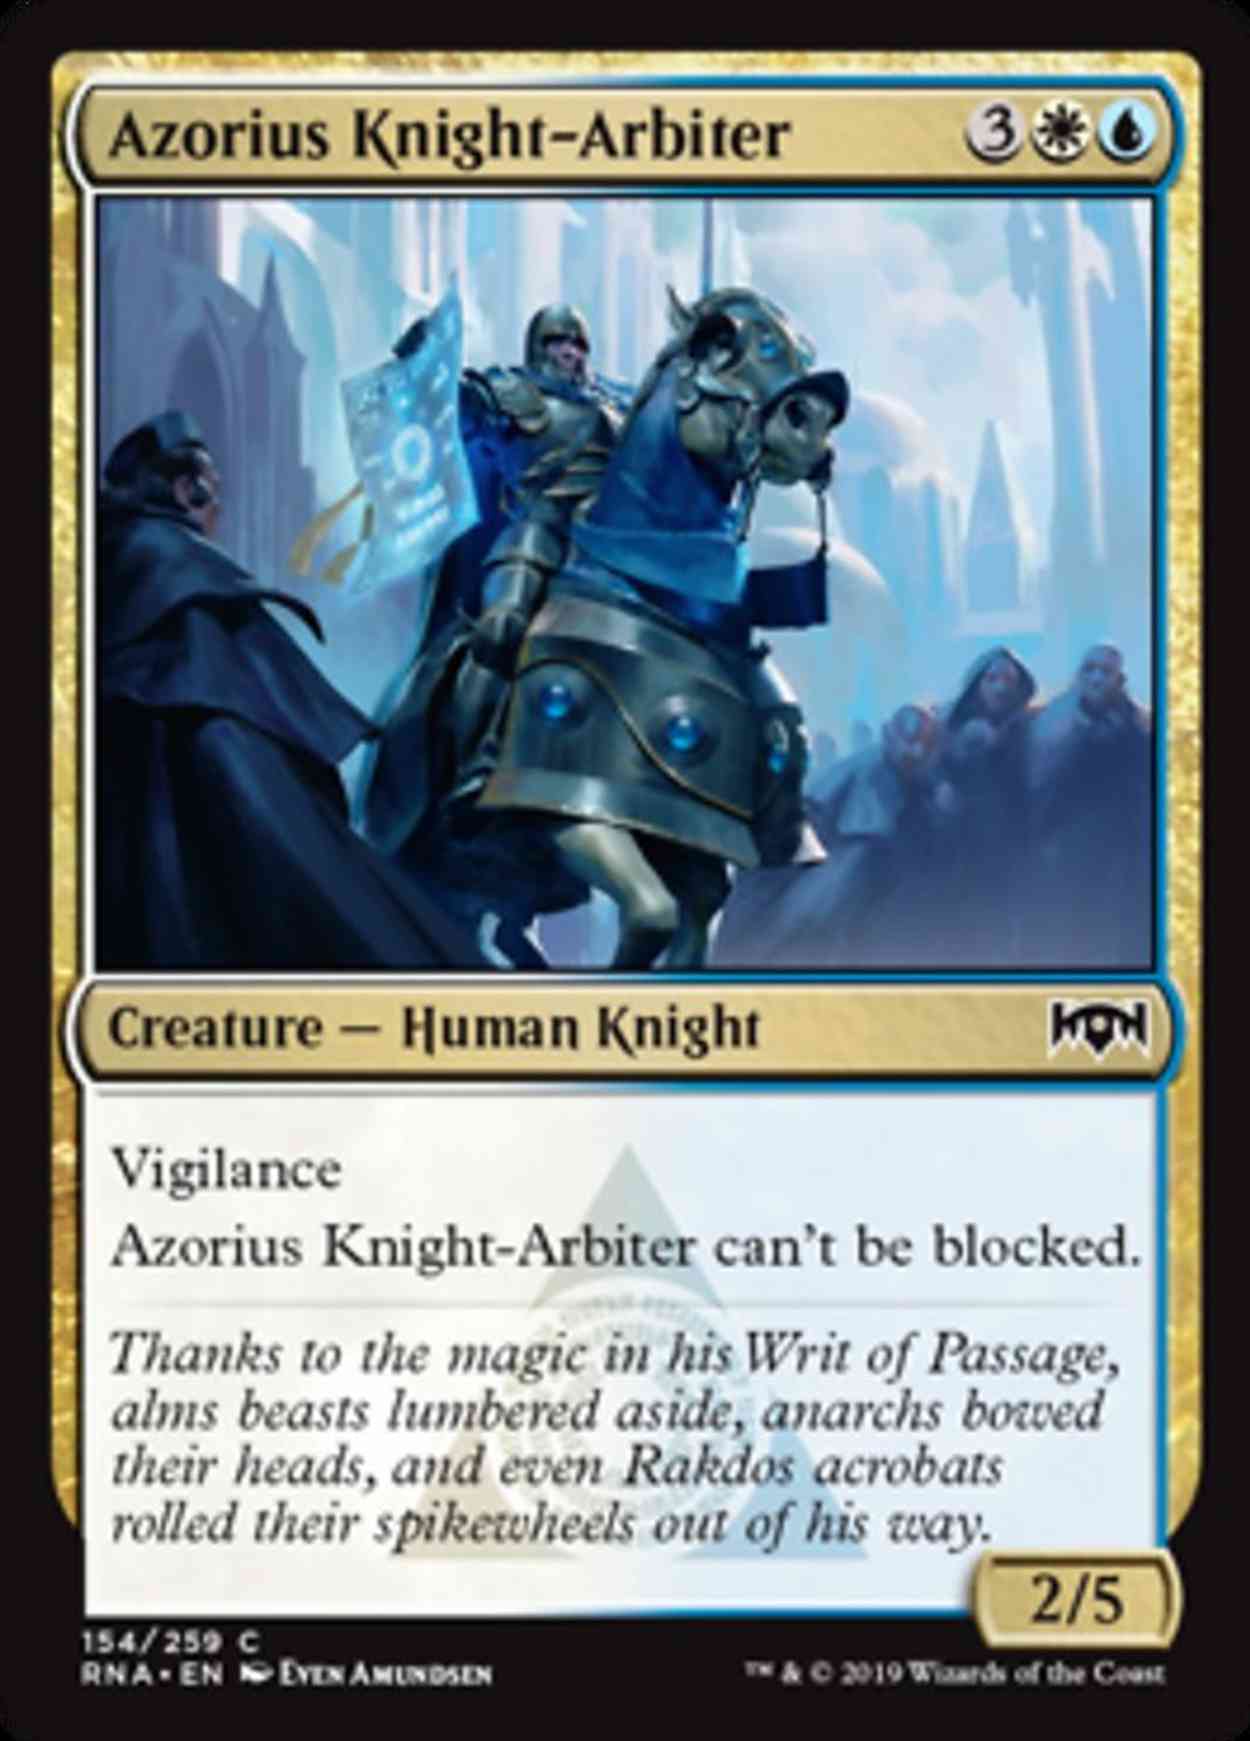 Azorius Knight-Arbiter magic card front